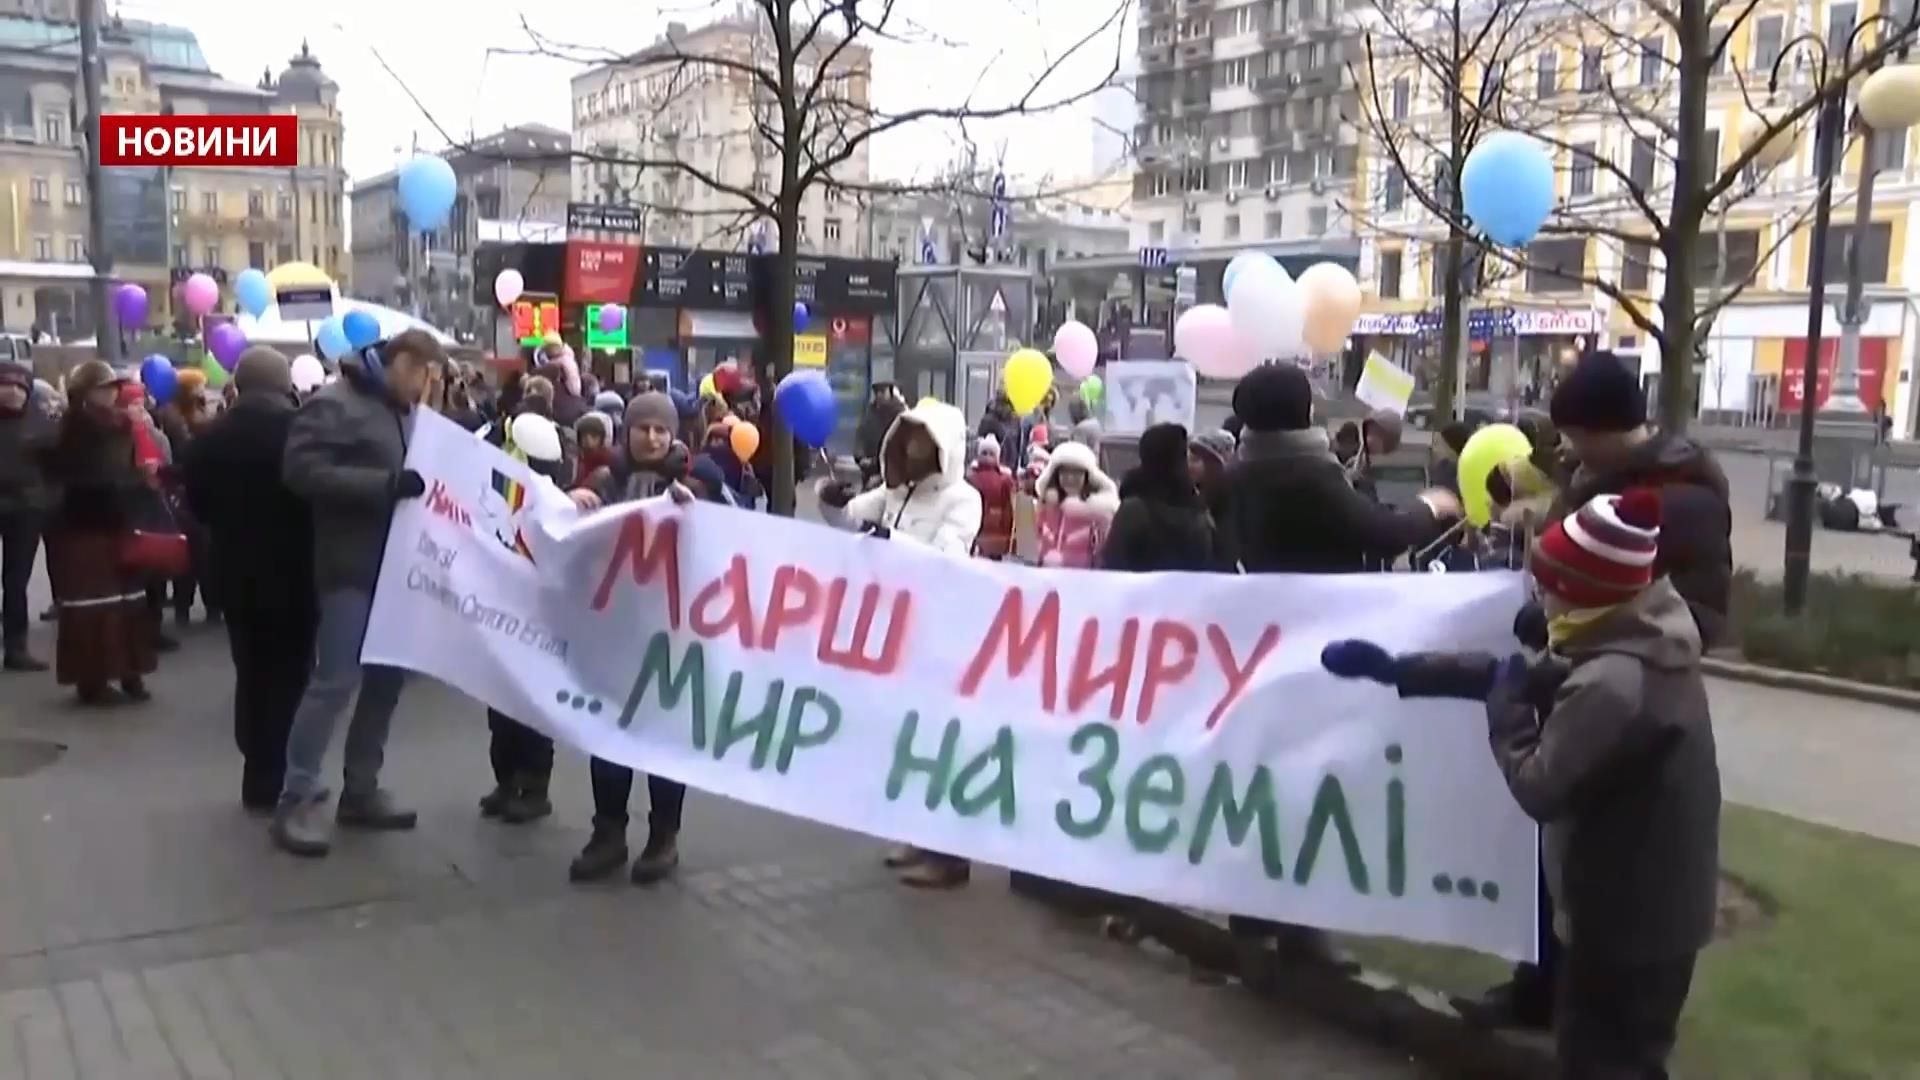 Чтобы не кулаками, а умом: как дети в Киеве вышли на марш "Мир на земле"